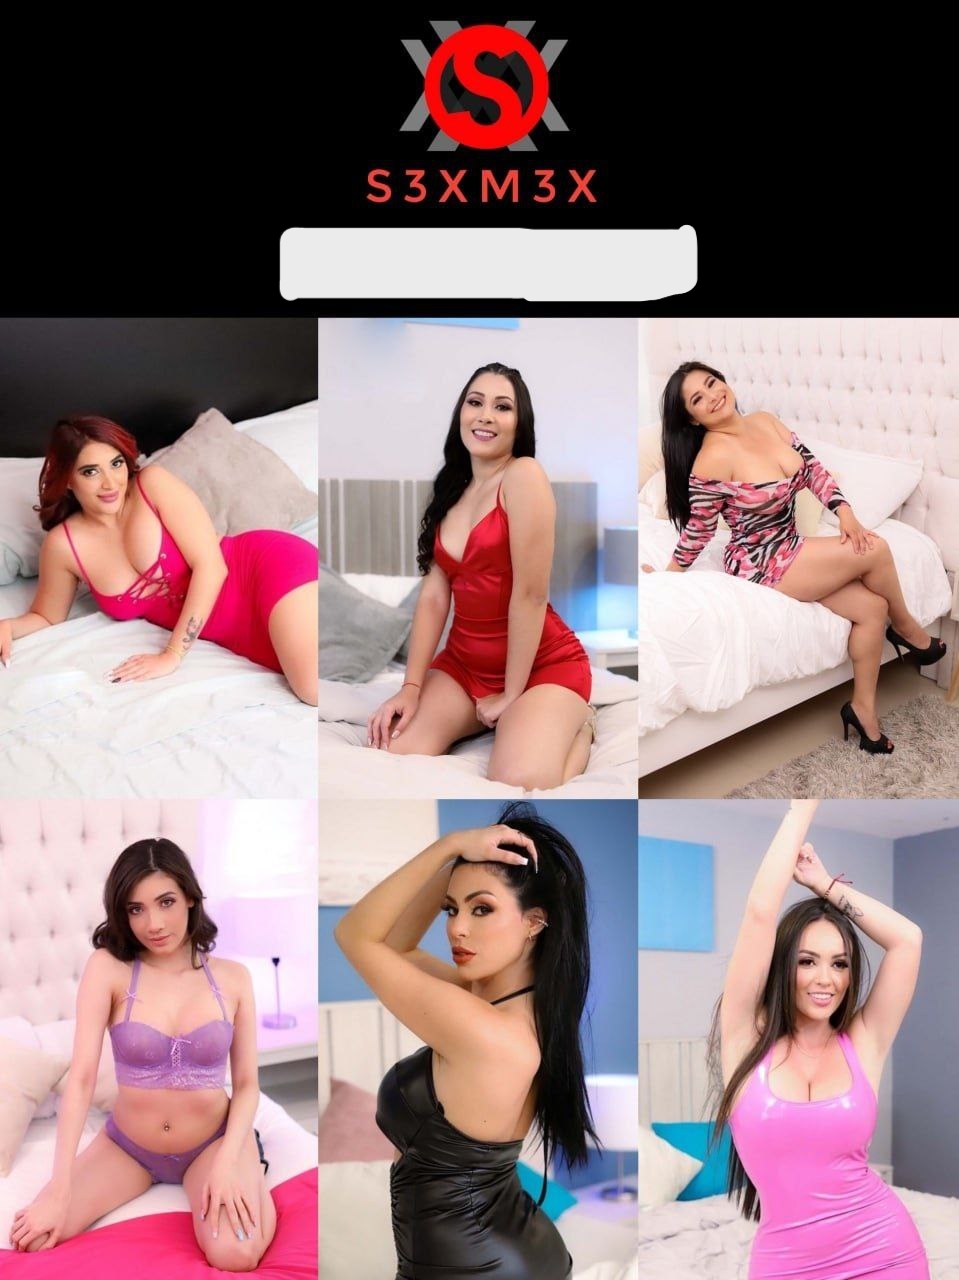 Free Sexmex